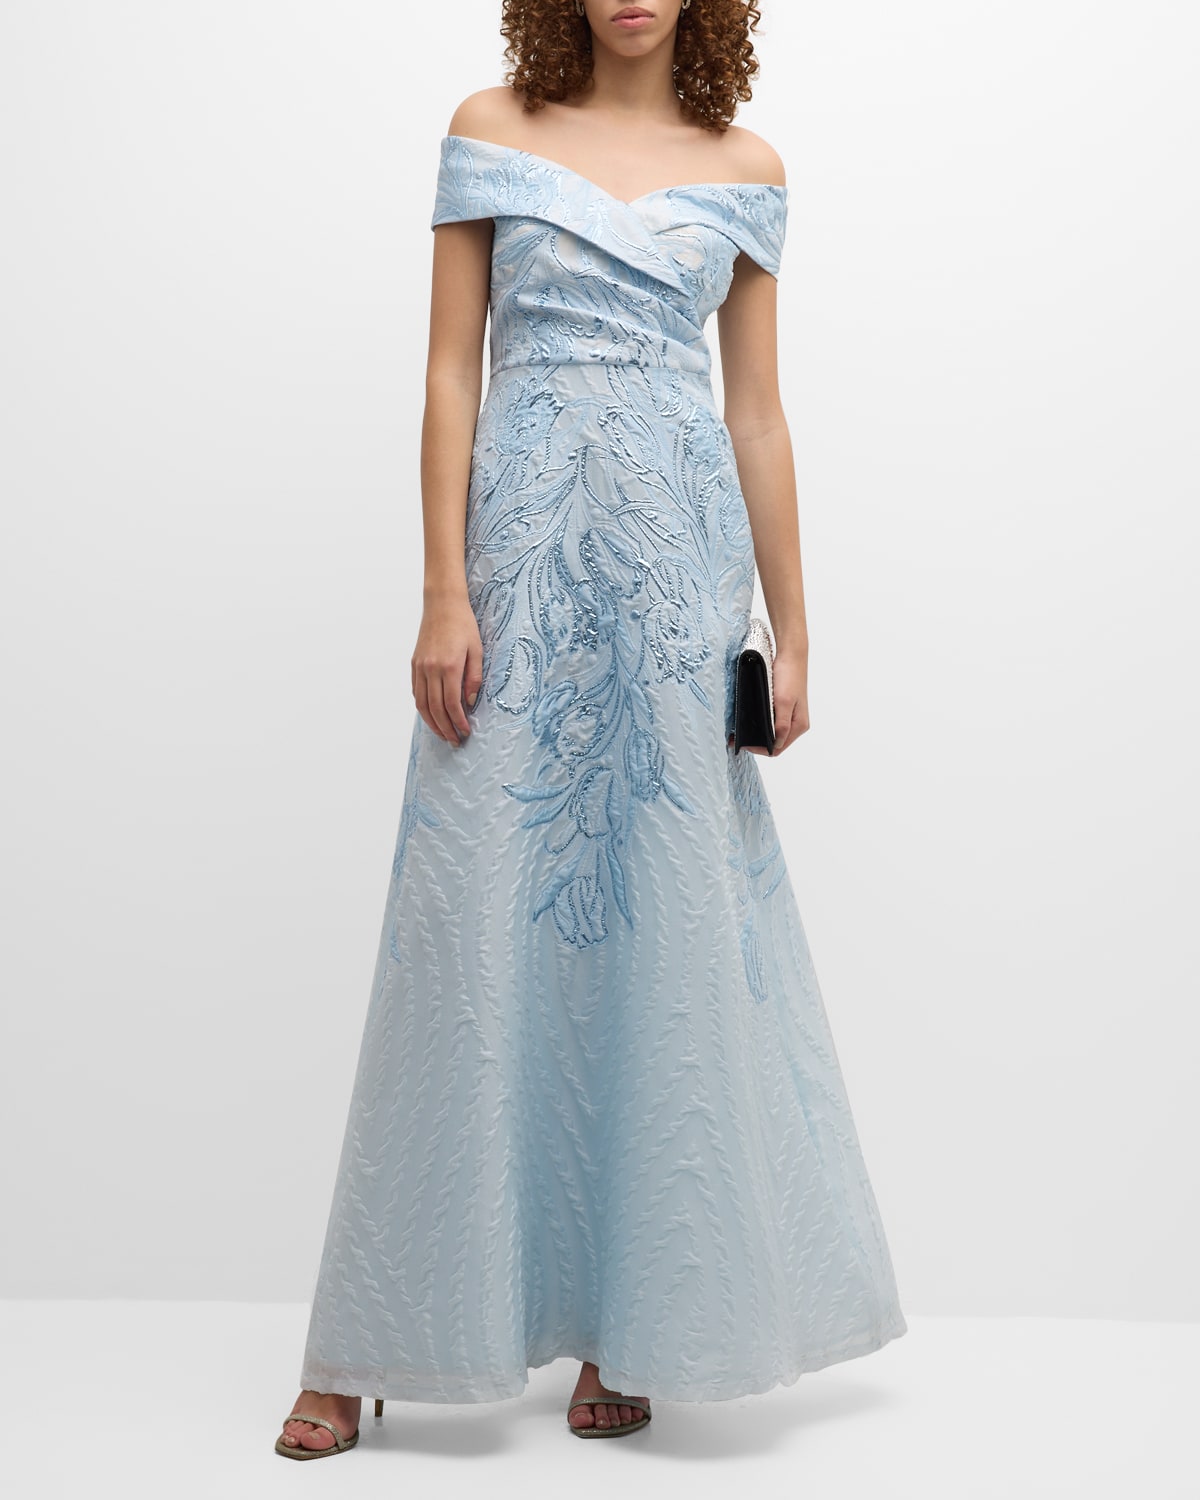 SHEIN Belle Floral Embroidered Lace Up Shoulder Bow Bodice Elegant Wedding  Dress